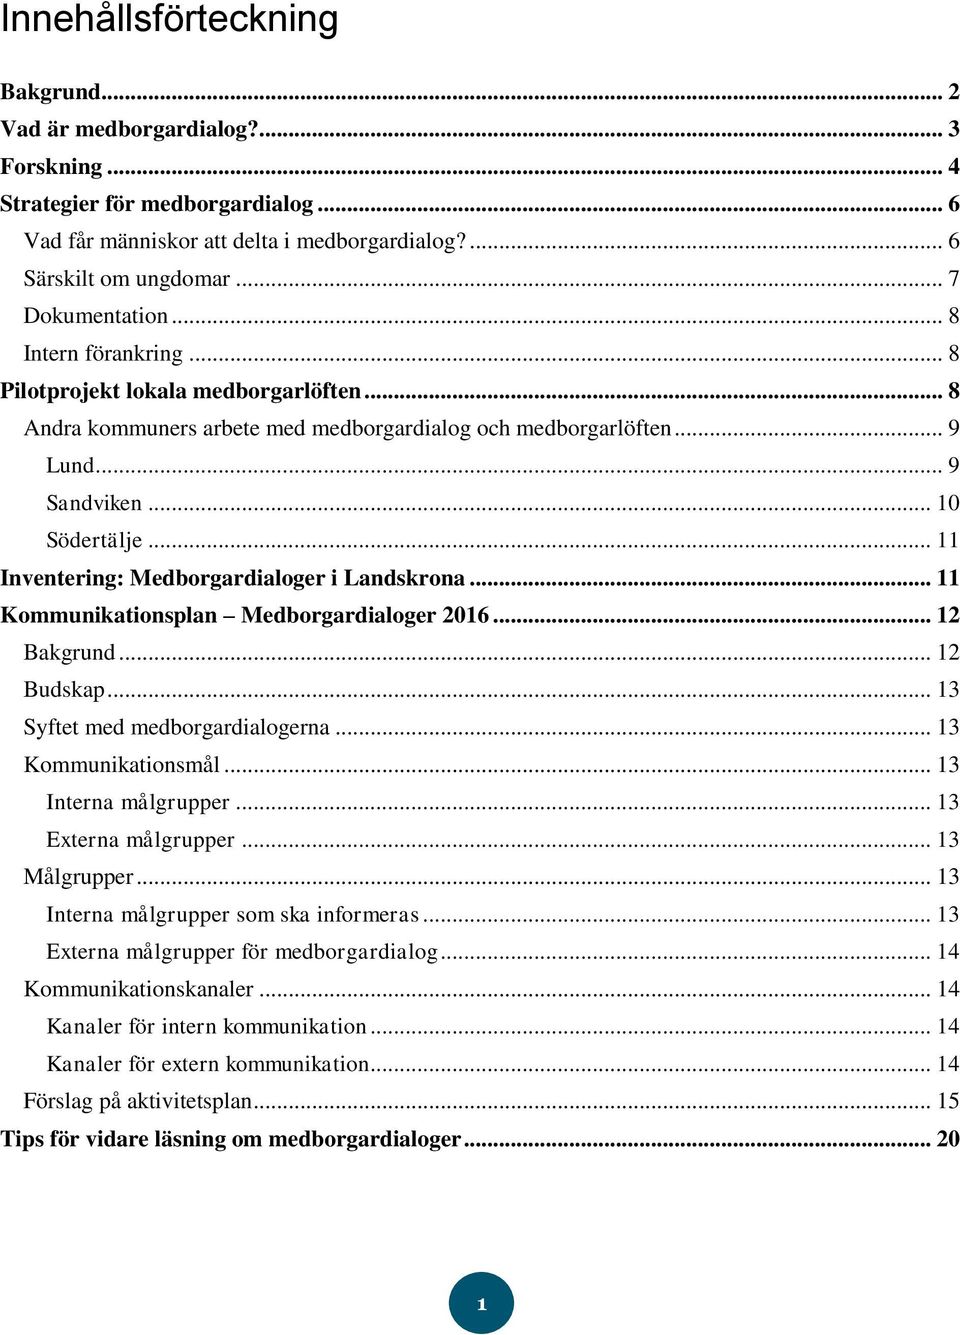 .. 11 Inventering: Medborgardialoger i Landskrona... 11 Kommunikationsplan Medborgardialoger 2016... 12 Bakgrund... 12 Budskap... 13 Syftet med medborgardialogerna... 13 Kommunikationsmål.